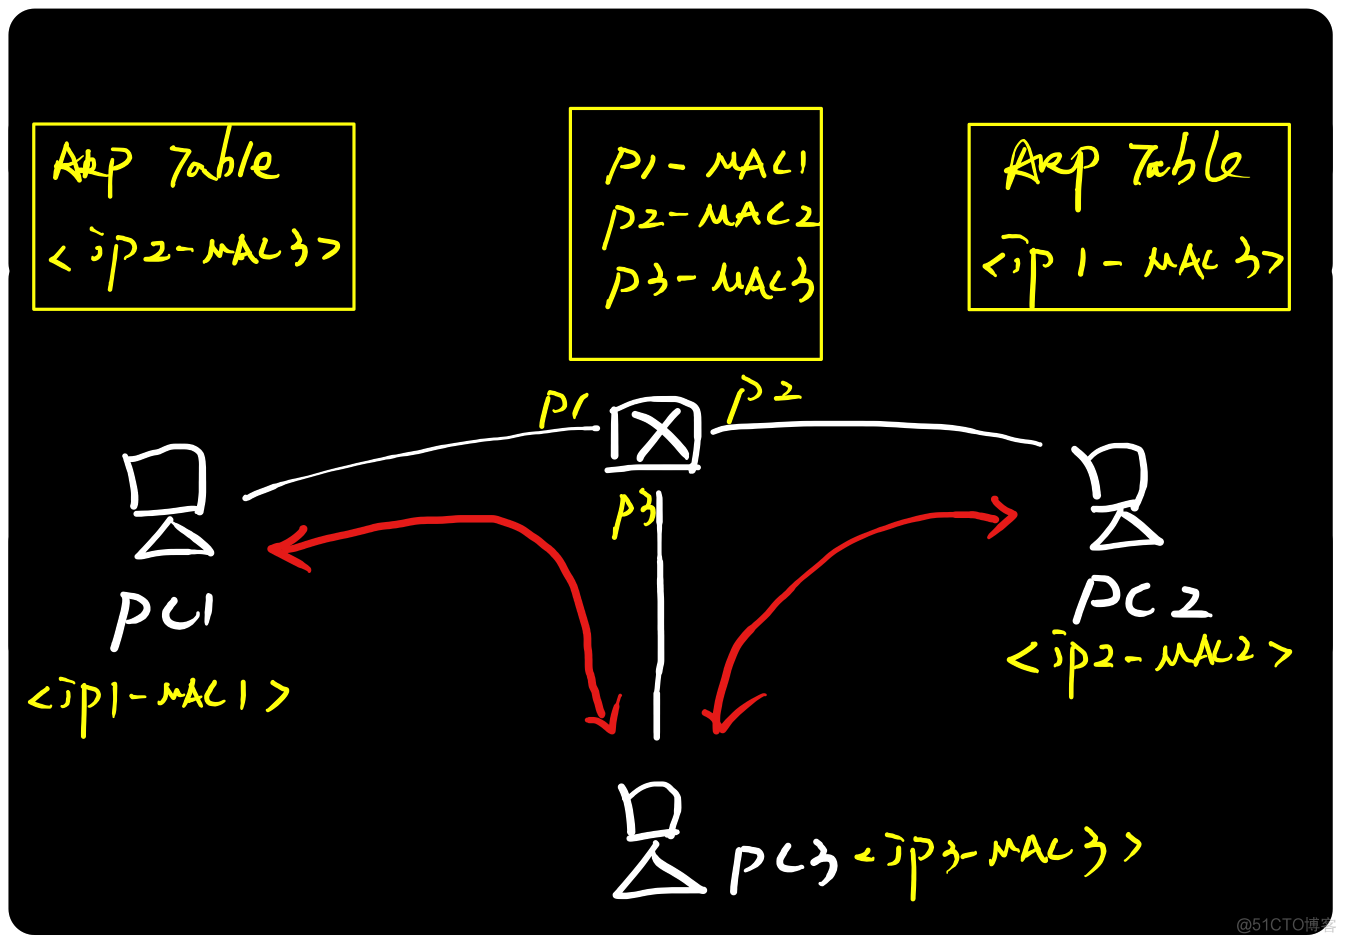 图解ARP协议（二）ARP***原理与实践_ARP_07